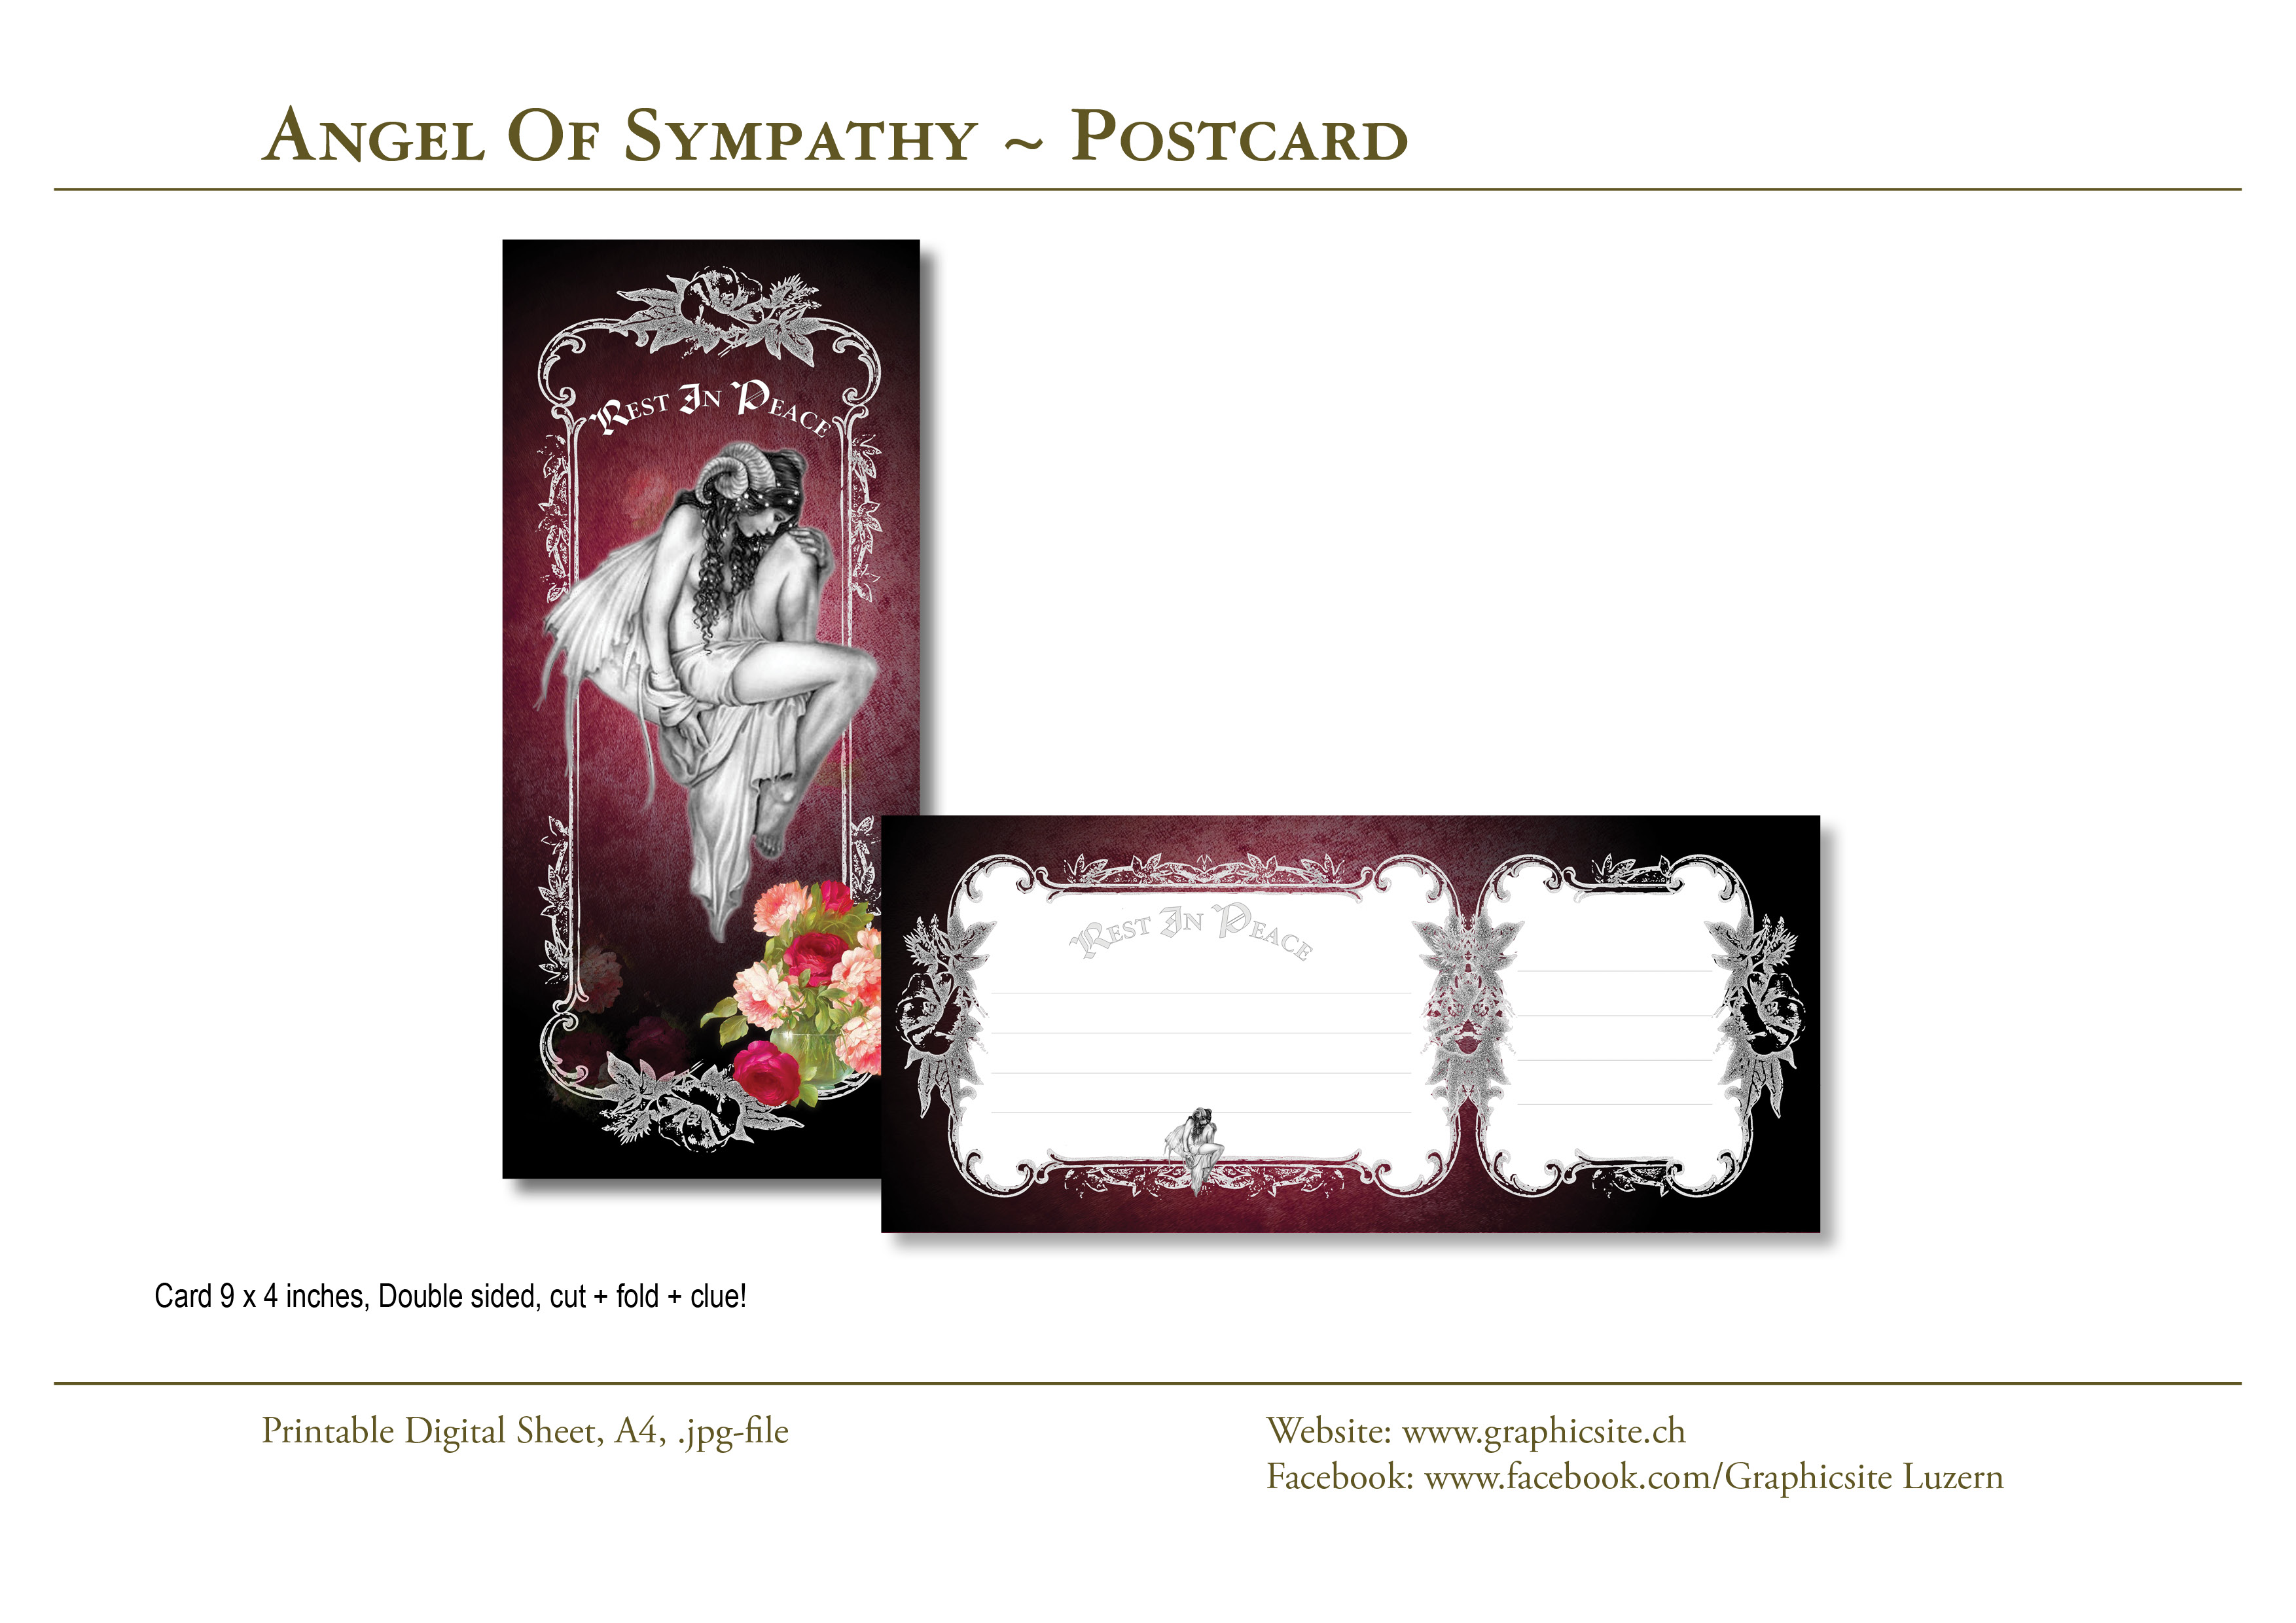 Printable Digital Sheets - Condolences - Angel Of Sympathy - #sympathy, #cards, #greetingcards, #postcard, #angel, #grief, #death, #funeral